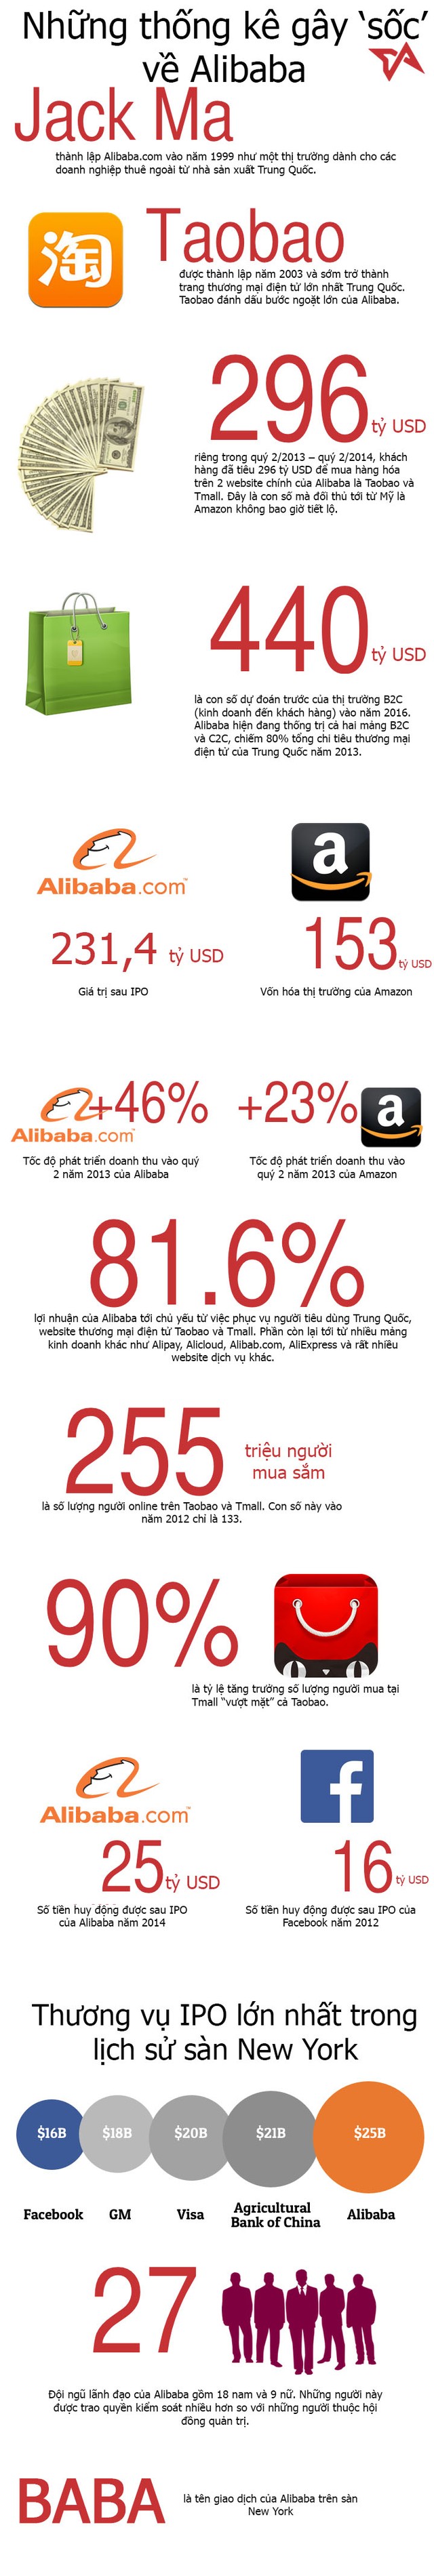 [Infographic] Những thống kê gây ‘sốc’ về Alibaba